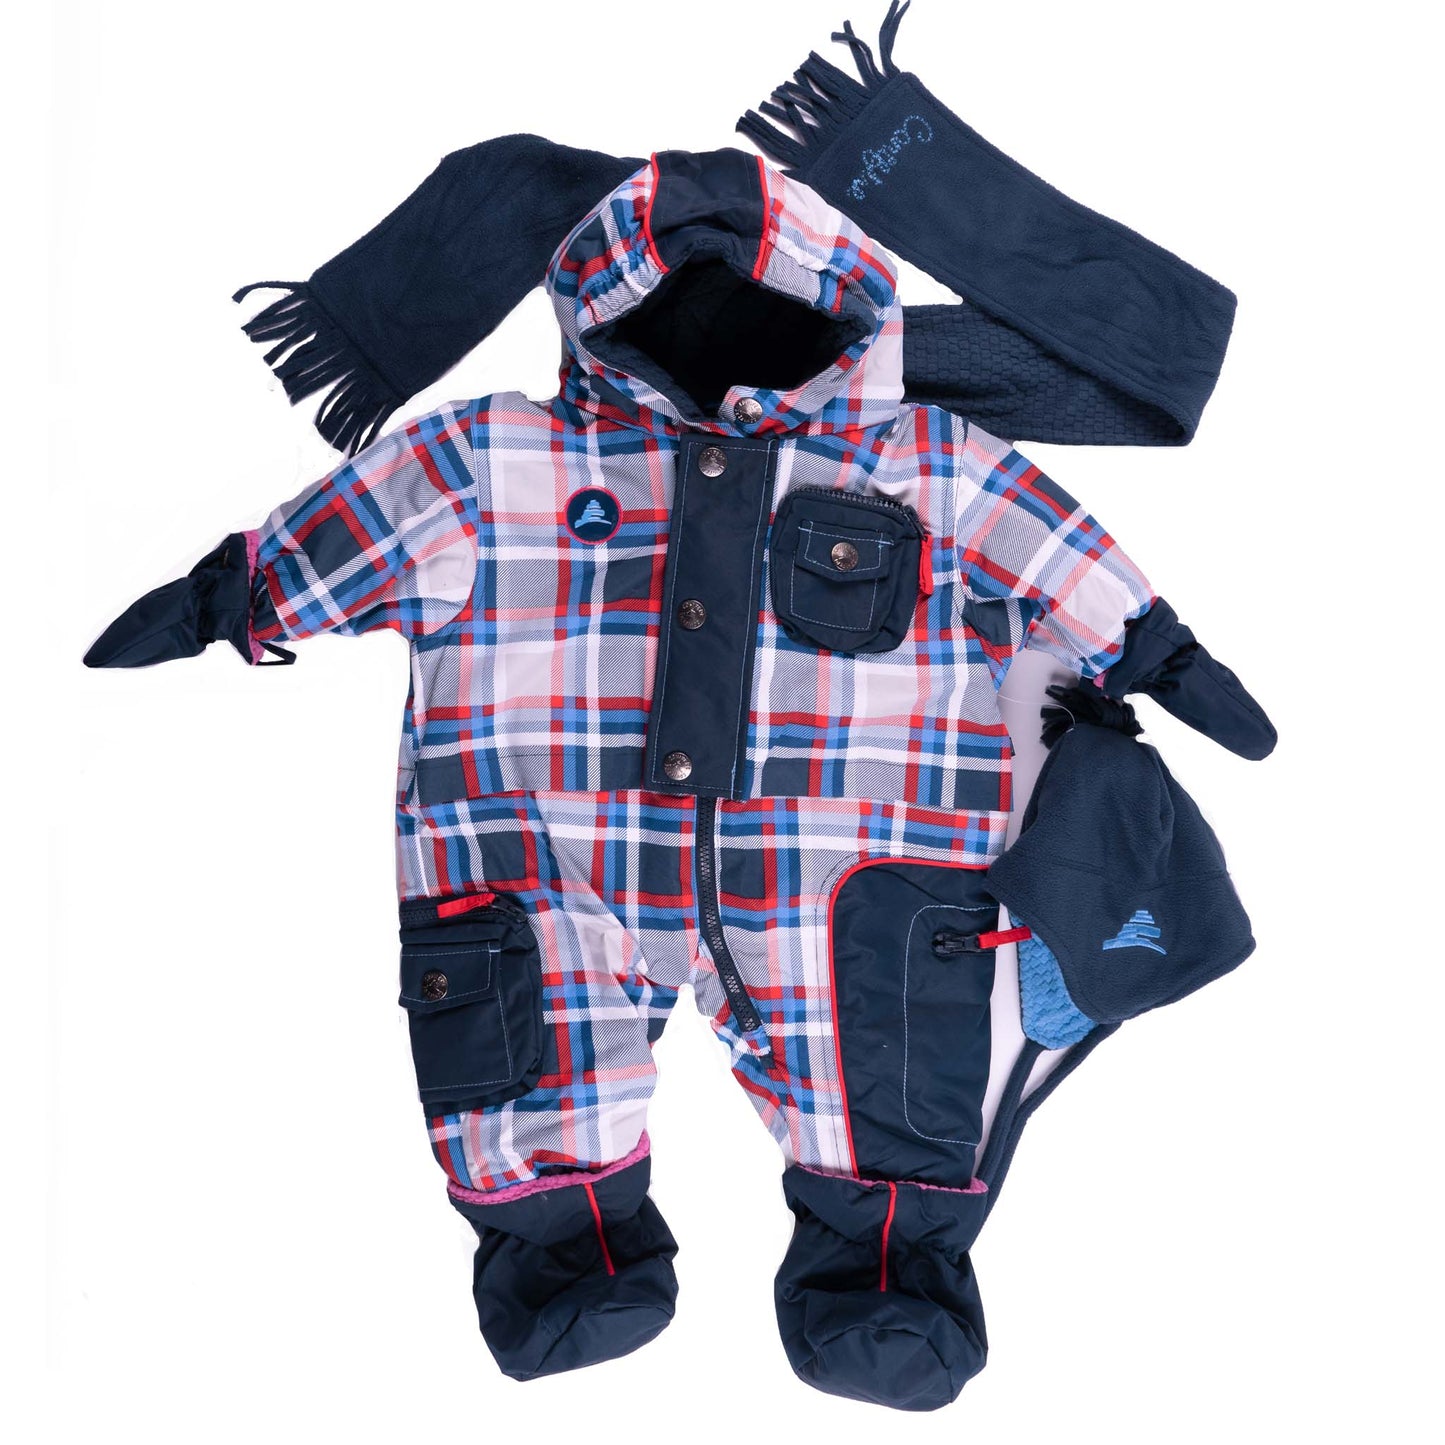 Unisex Infant 1-piece Snowsuit